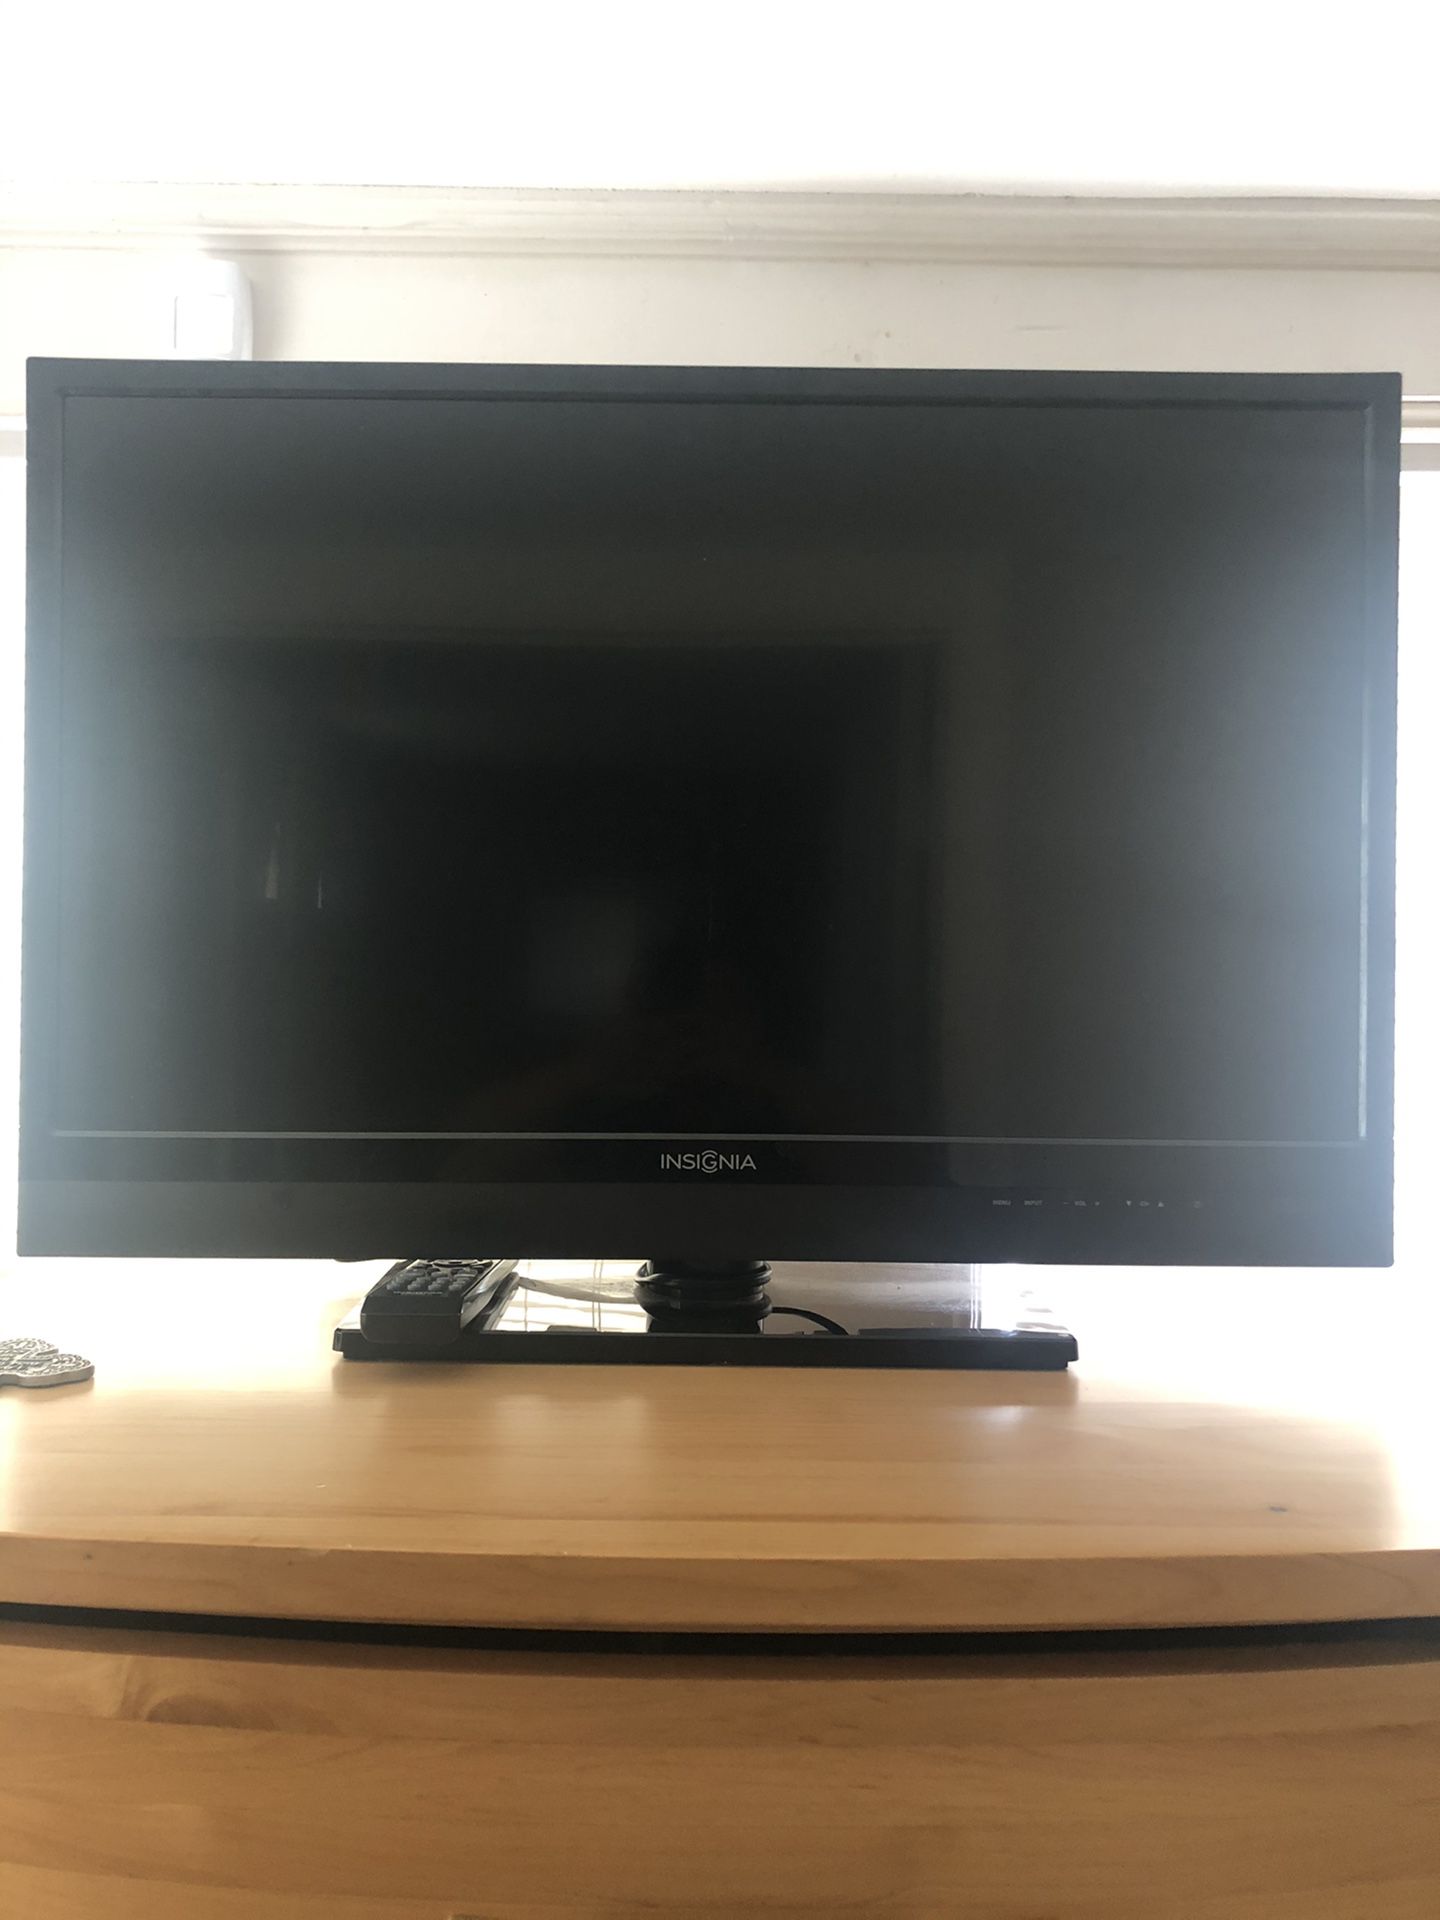 32 inch flat screen INSIGNA TV